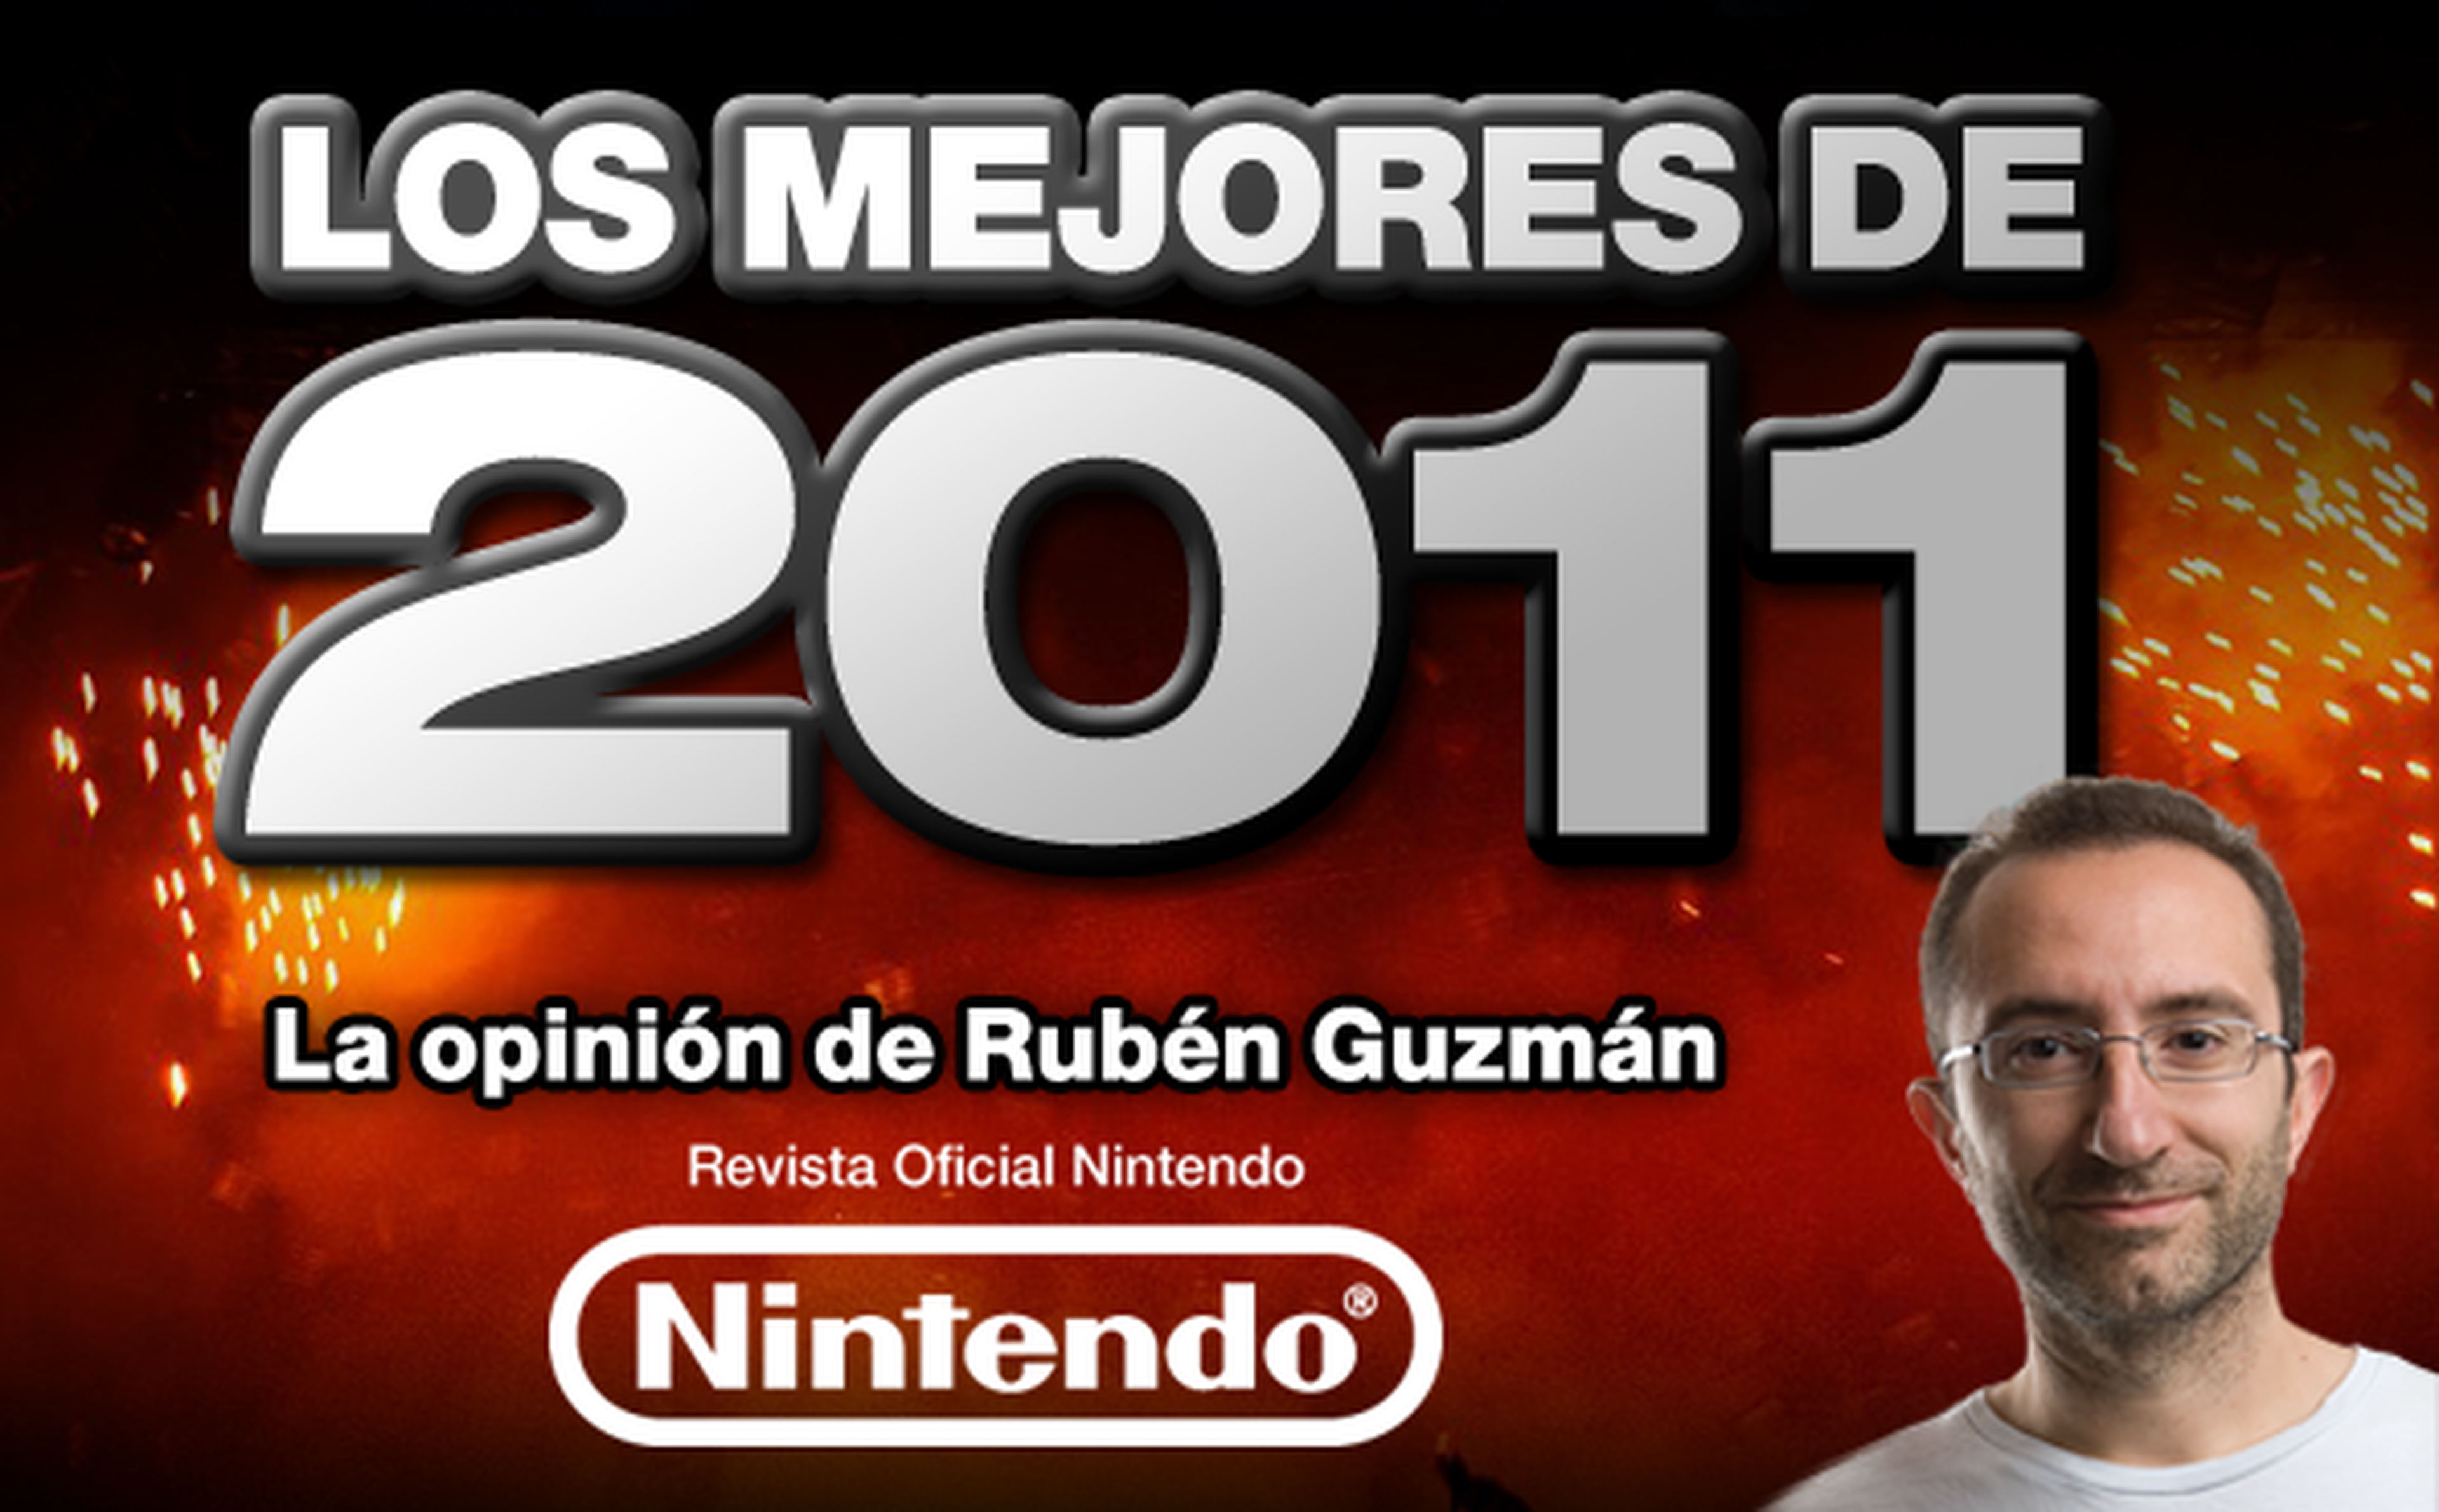 Los mejores de 2011: Rubén Guzmán